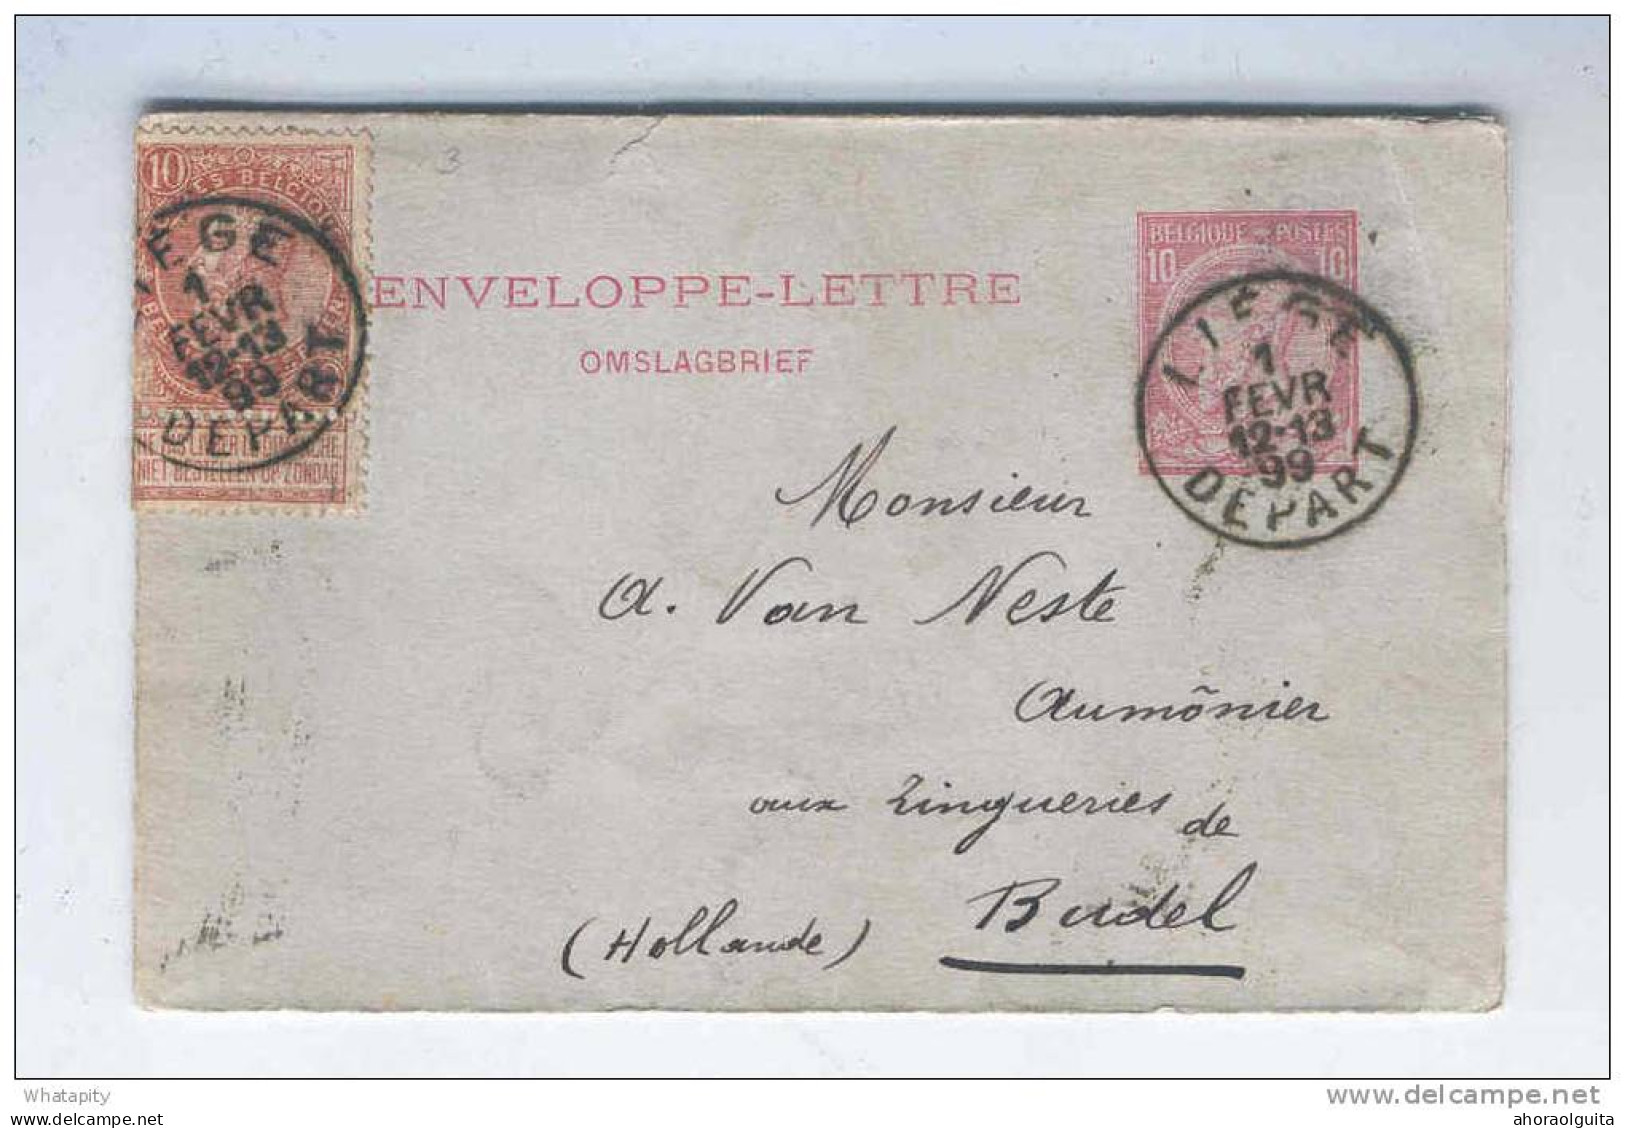 Enveloppe - Lettre Type No 46 LIEGE Départ 1899 + Fine Barbe 10 C - TARIF PREFERENTIEL Vers NL - EMPLOI TARDIF --  KK581 - Briefumschläge